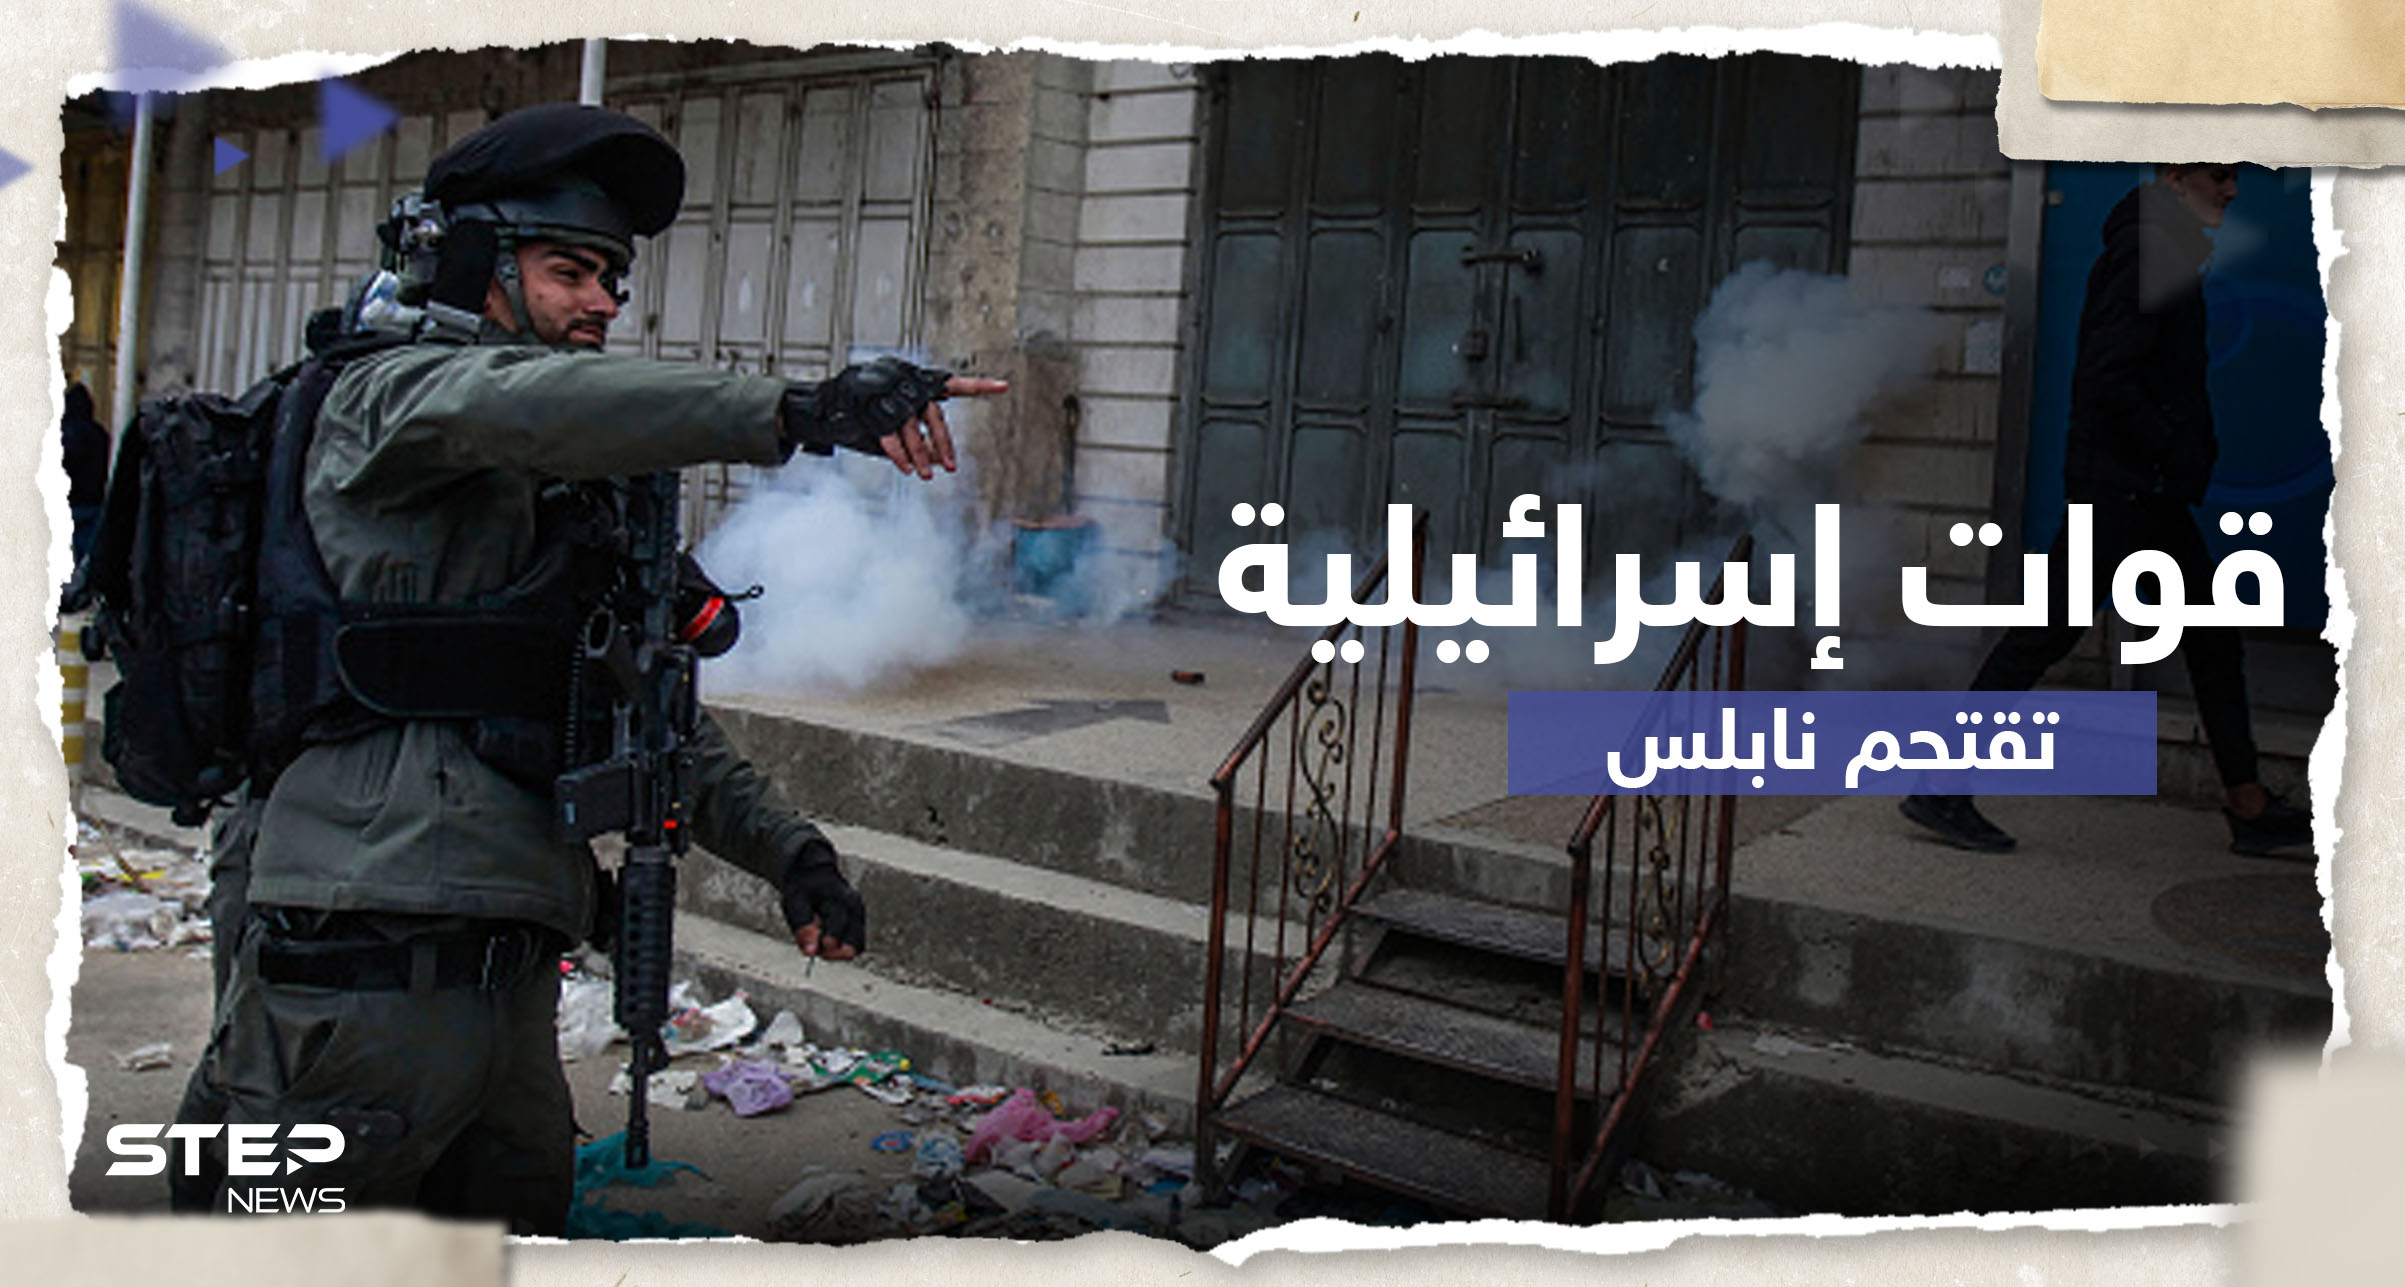 قوات إسرائيلية تقتحم مدينة نابلس وتقتل فلسطينيين.. وإضراب شامل يعم المدينة (صور)